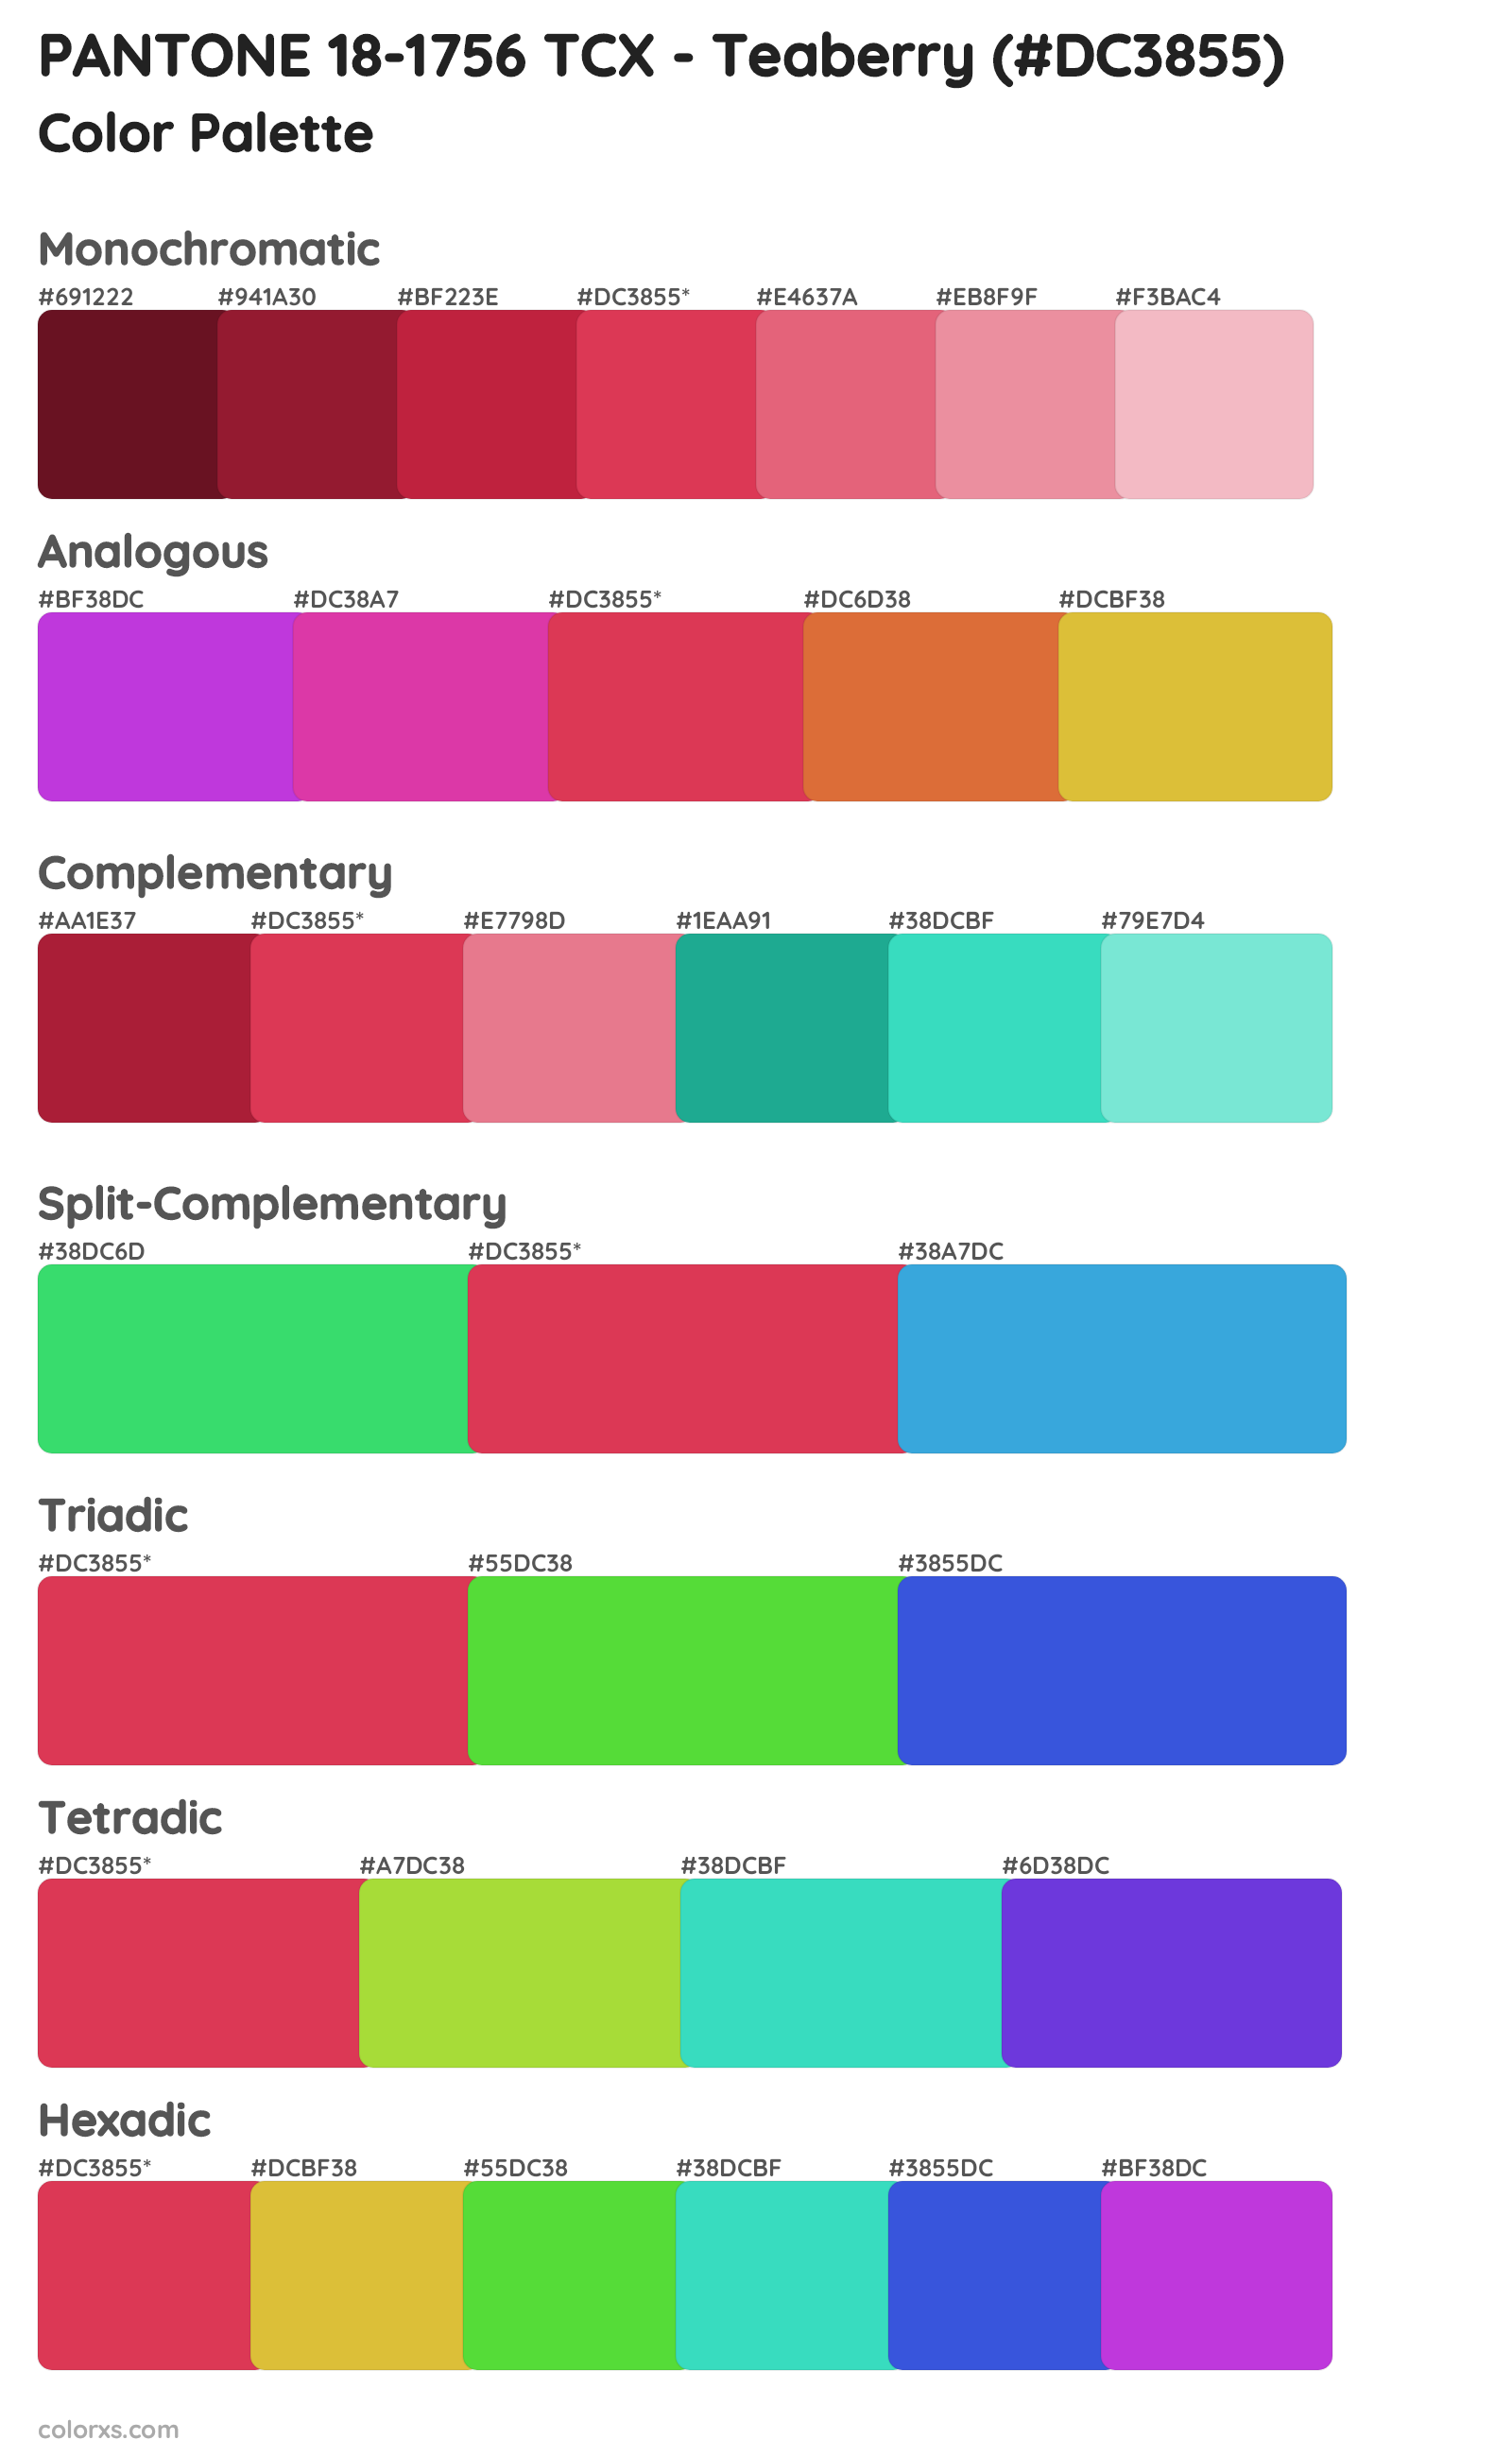 PANTONE 18-1756 TCX - Teaberry Color Scheme Palettes